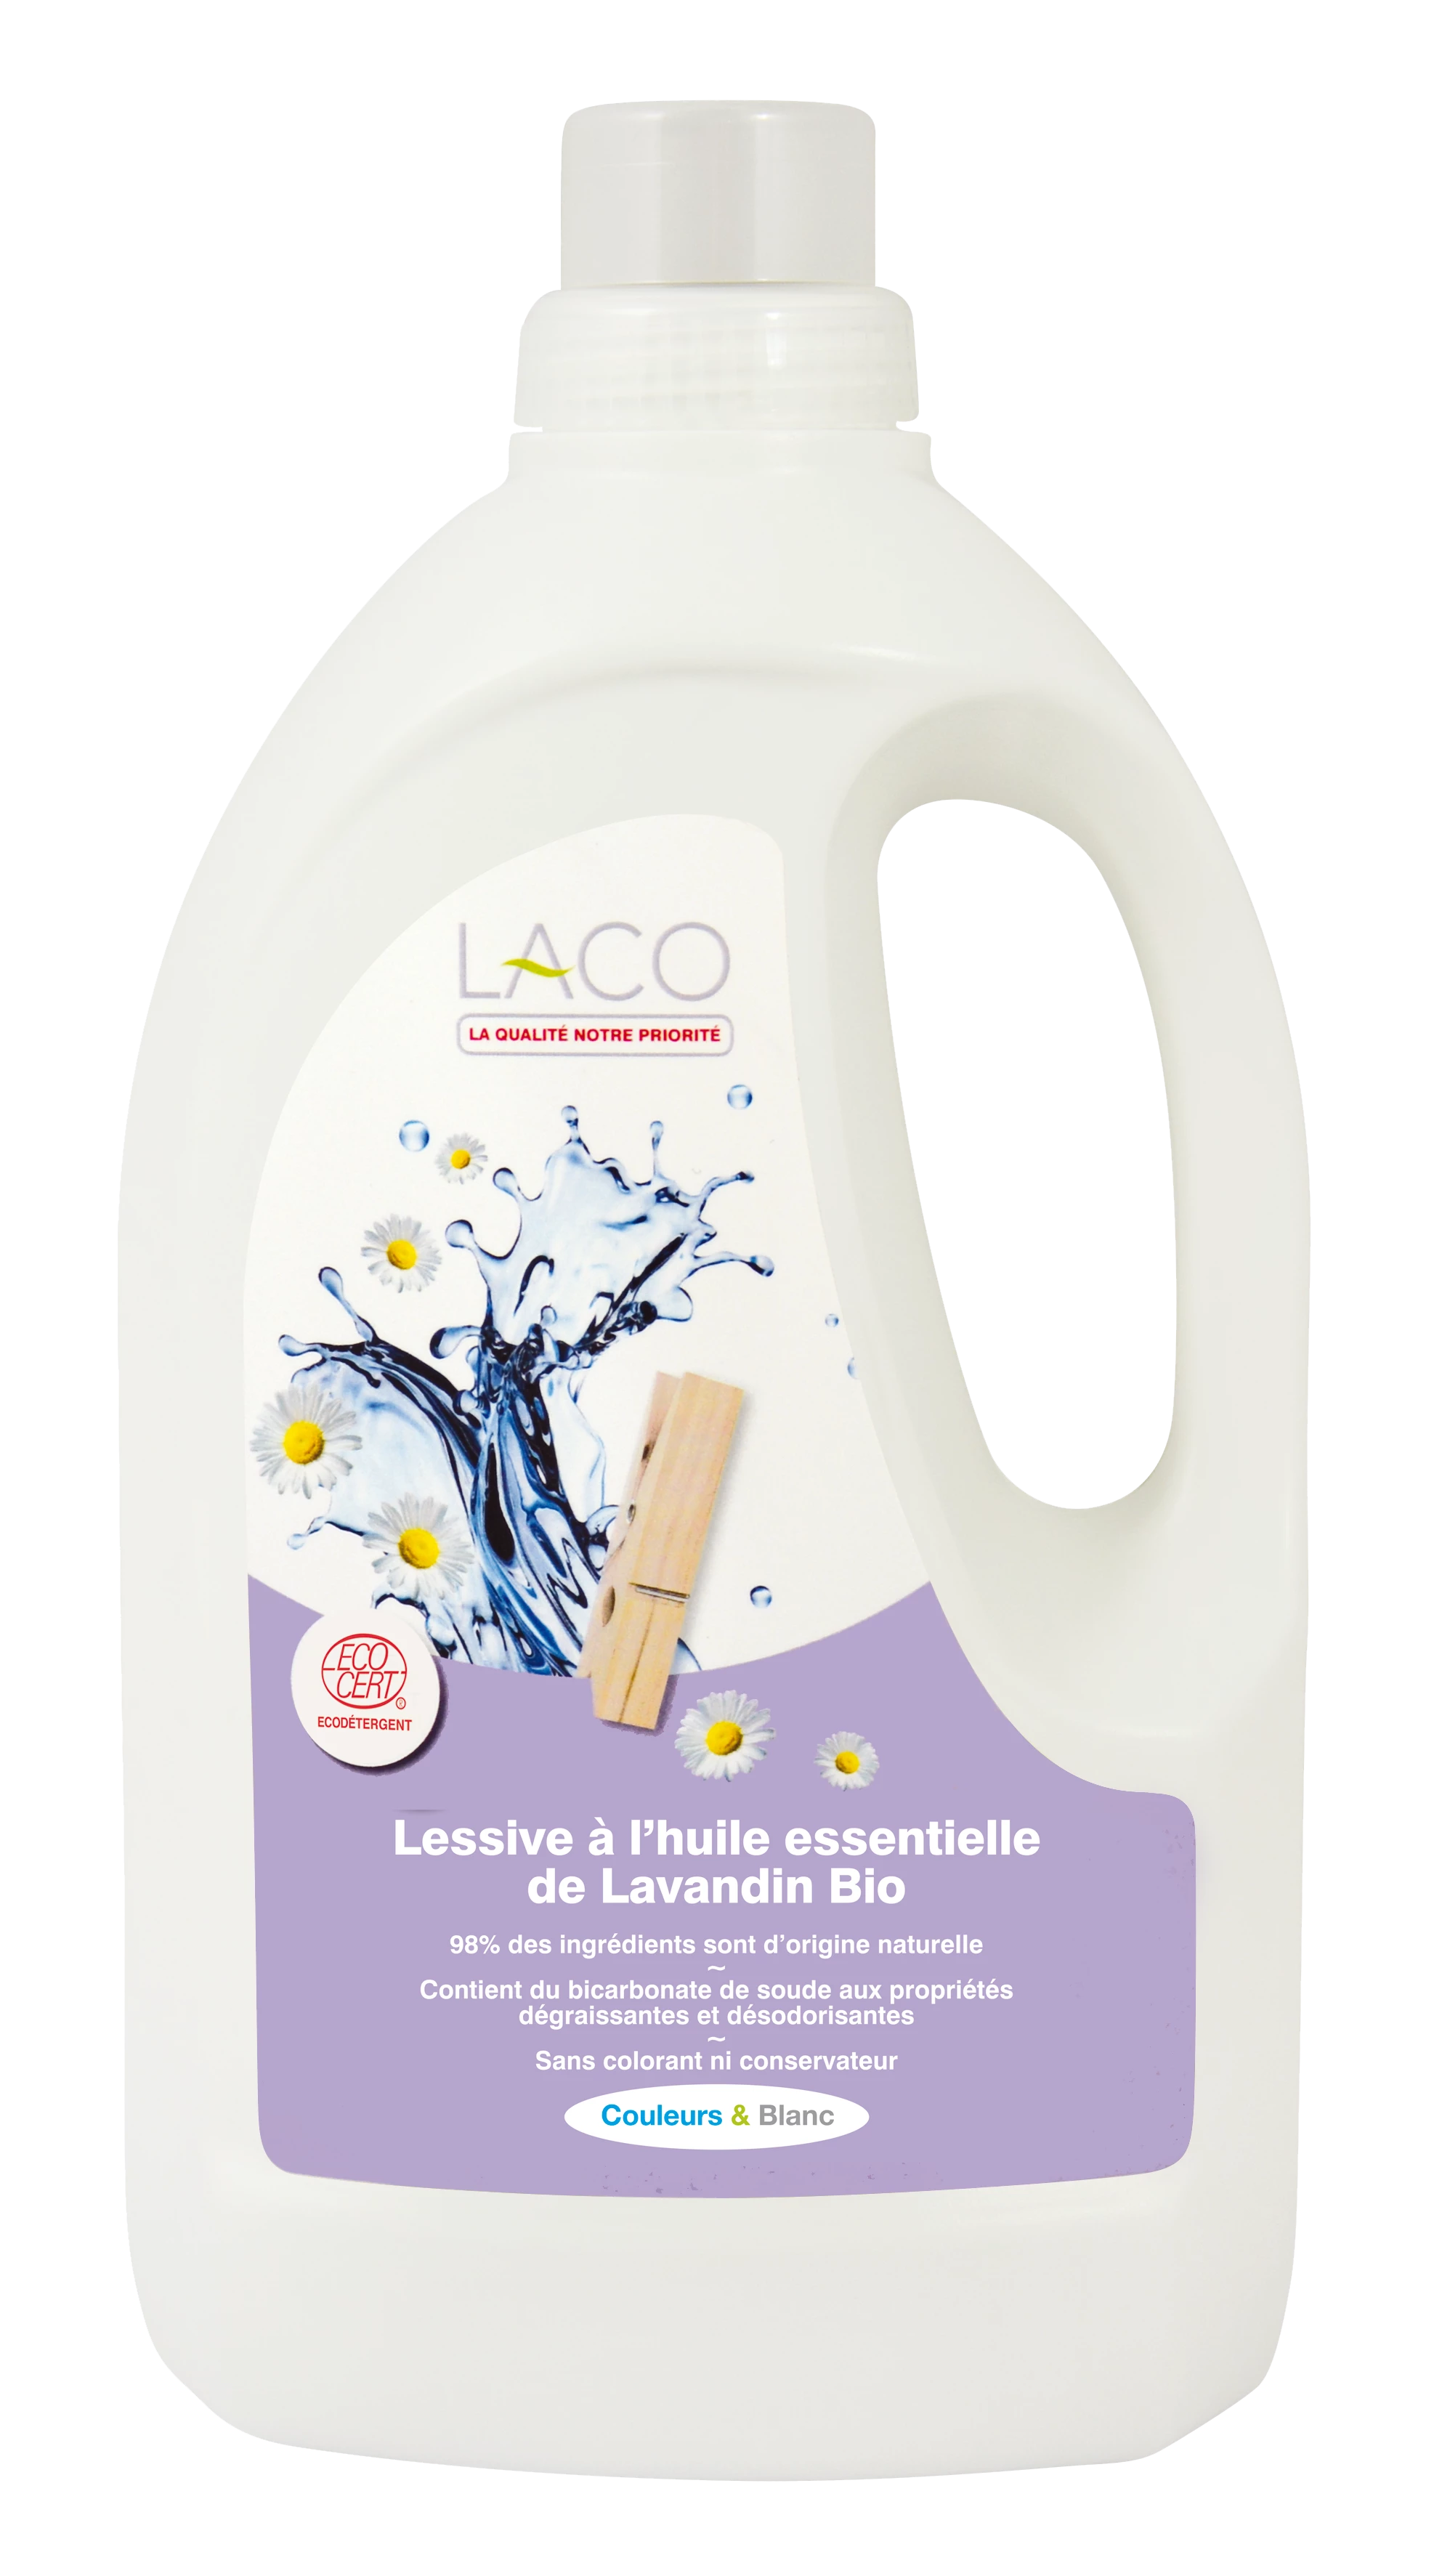 Detergente Ecológico con Aceite Esencial de Lavanda 2l - Laco